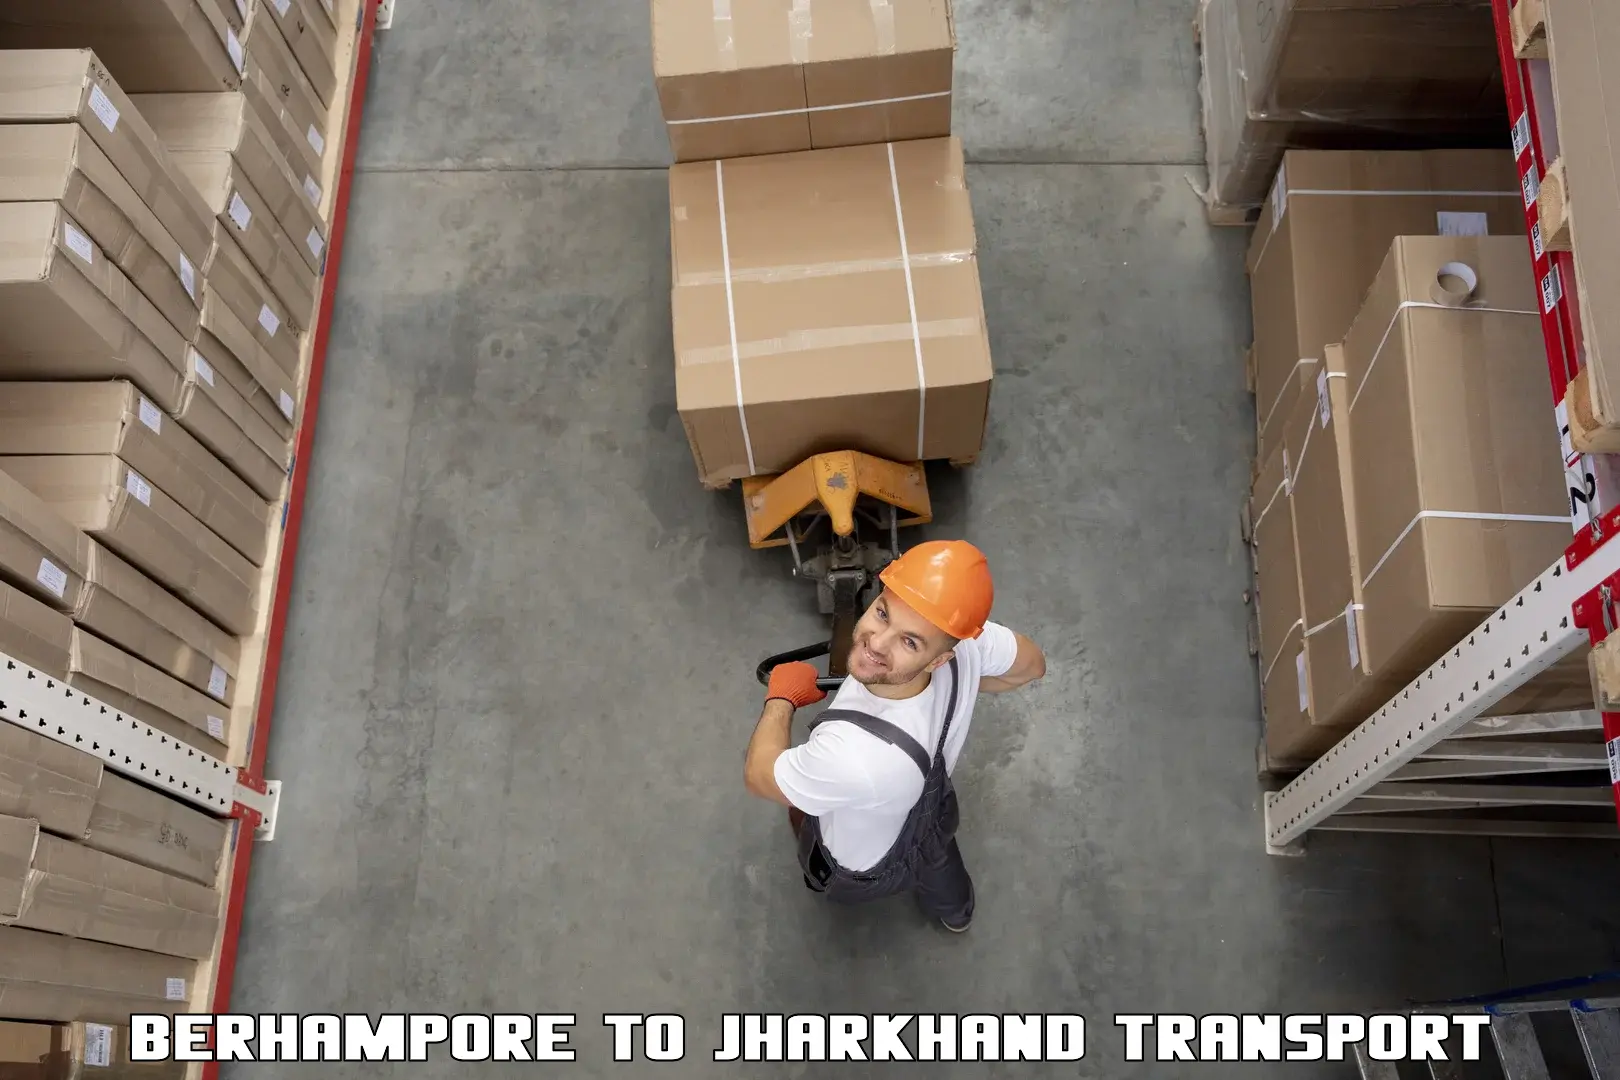 Goods delivery service Berhampore to Hariharganj